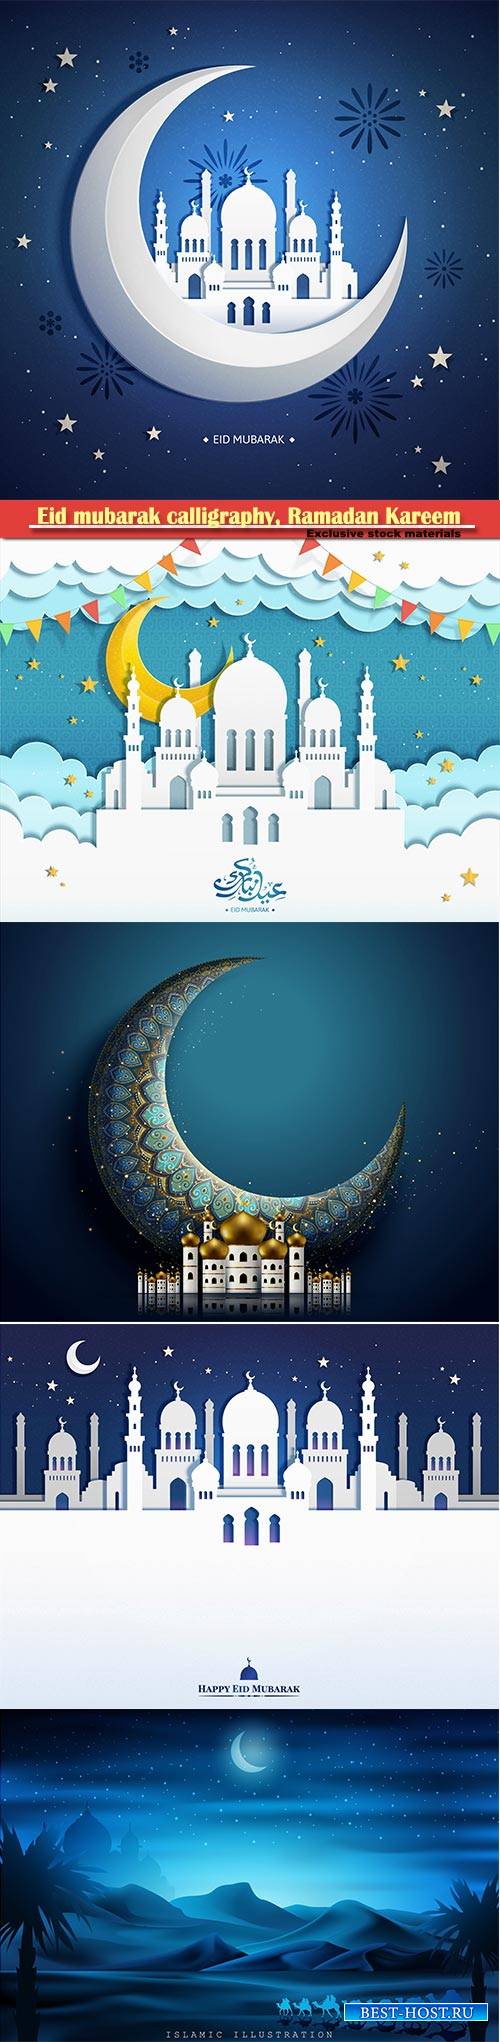 Eid mubarak calligraphy, Ramadan Kareem vector card # 12